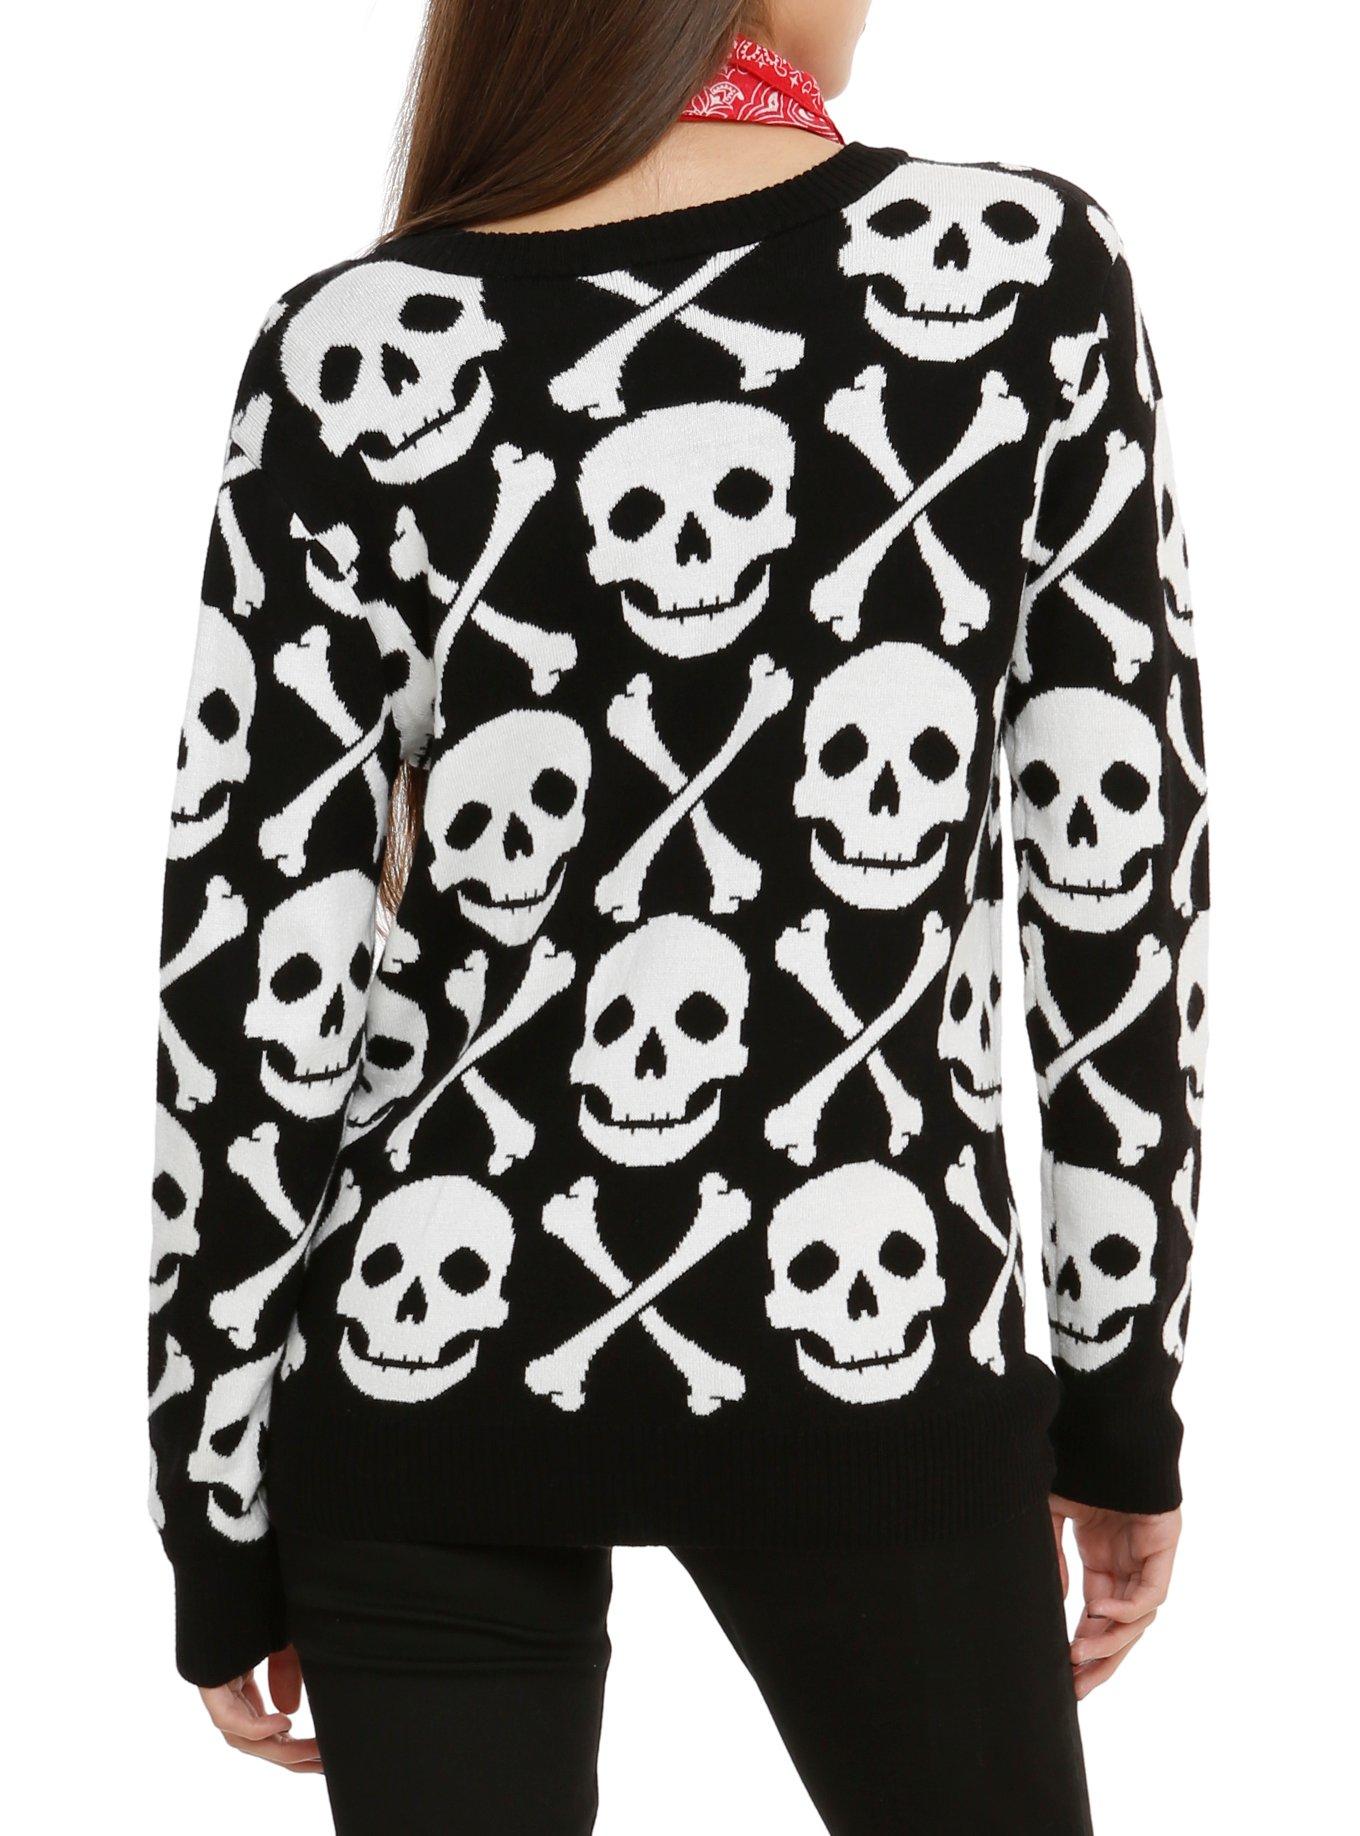 Skull & Crossbones Cardigan, BLACK, alternate